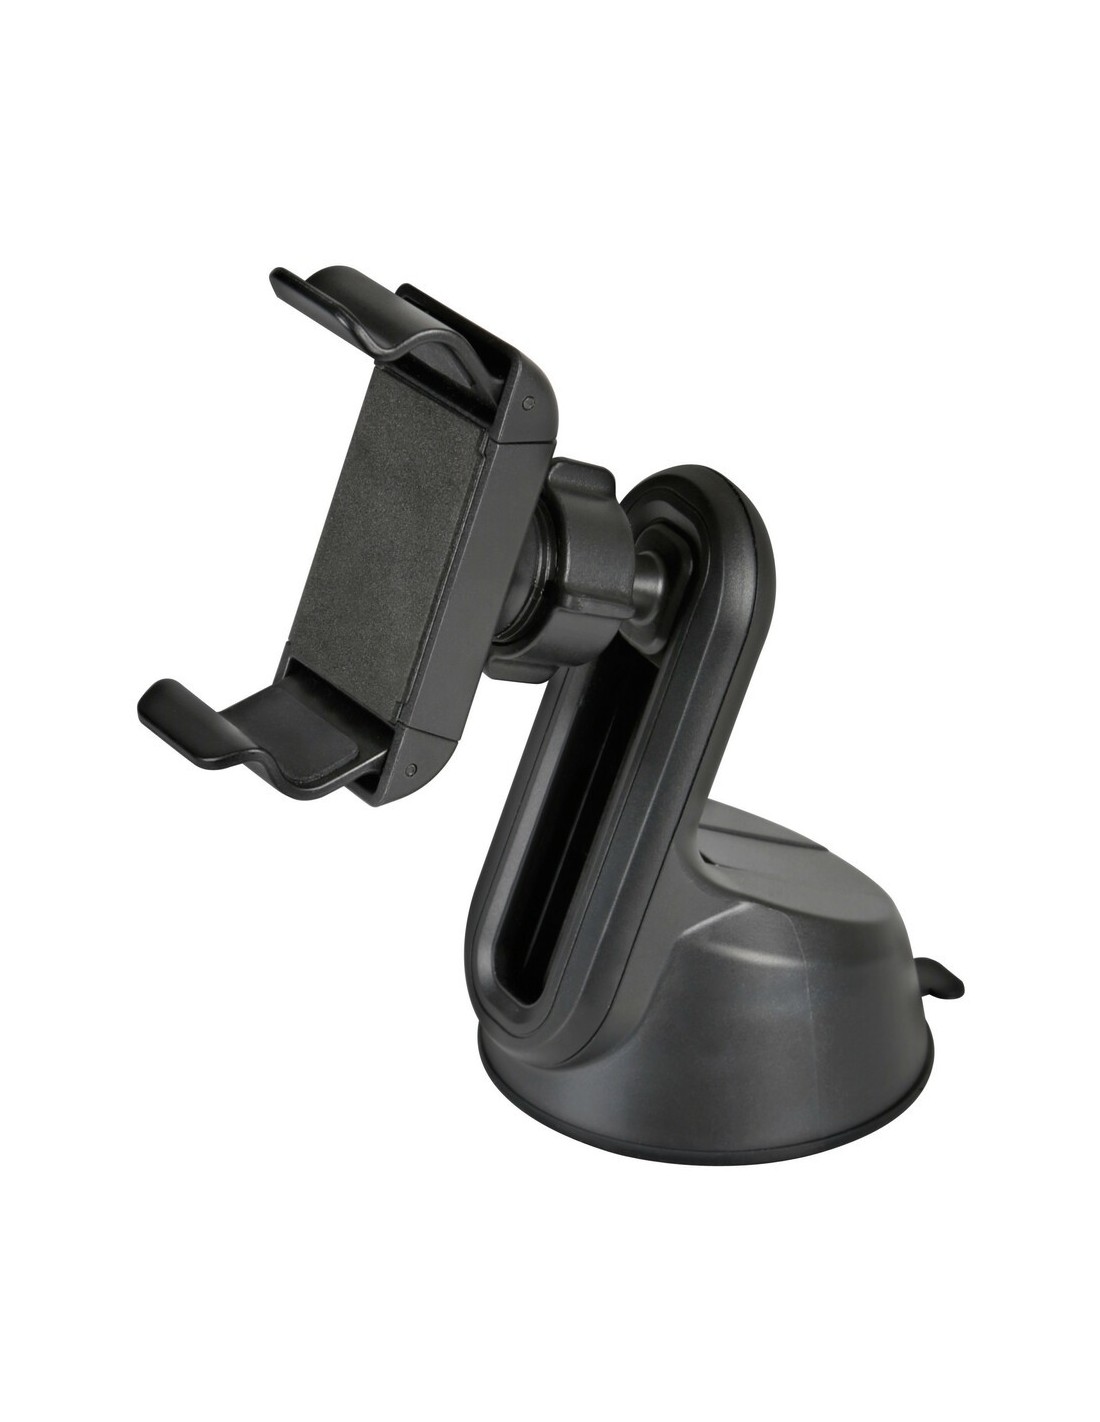 soporte-para-telefono-con-ventosa-adhesiva-55-80-mm-snap-elevator.jpg